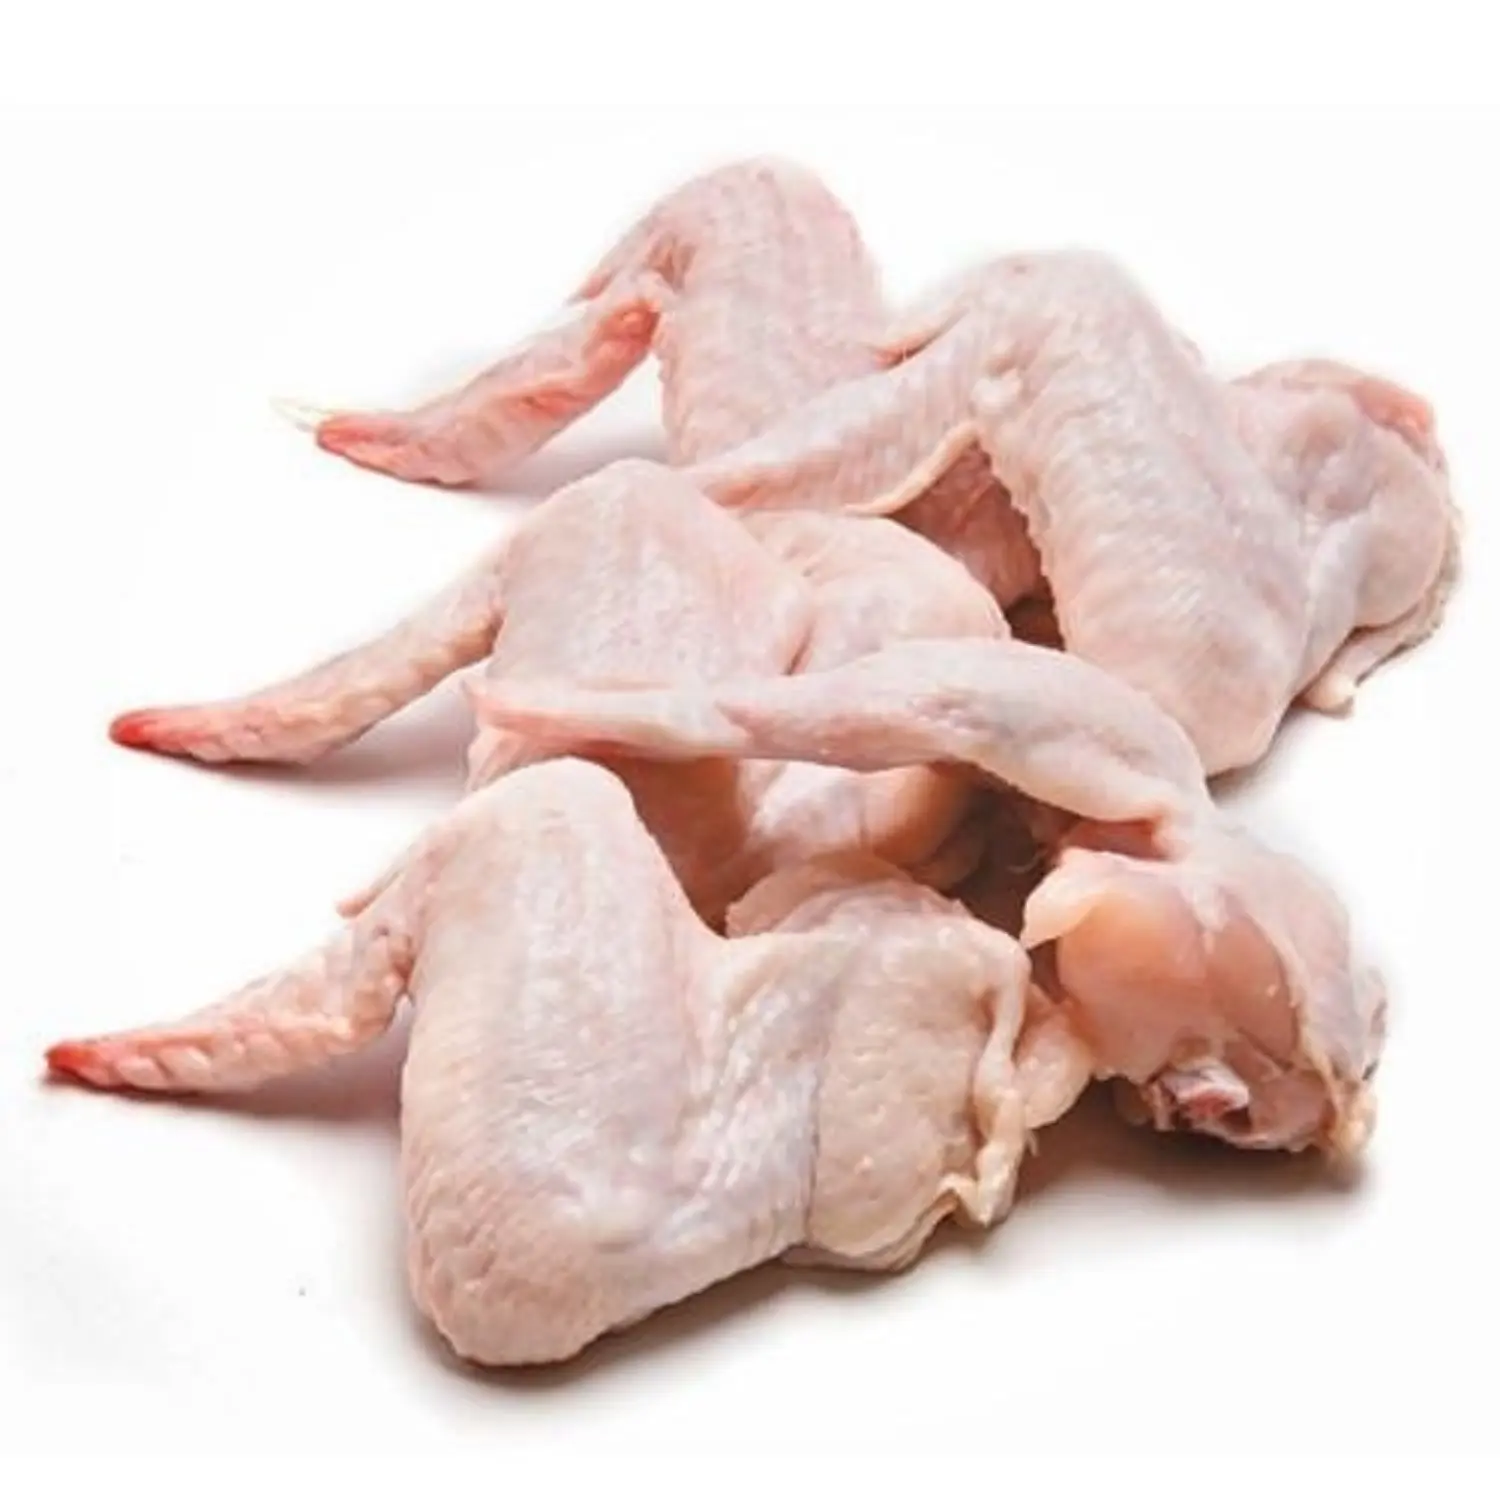 Dondurulmuş tavuk kanatları Premium sınıf dondurulmuş tavuk orta kanatları dondurulmuş kanat tavuk kanada üretici pişirme için iyi